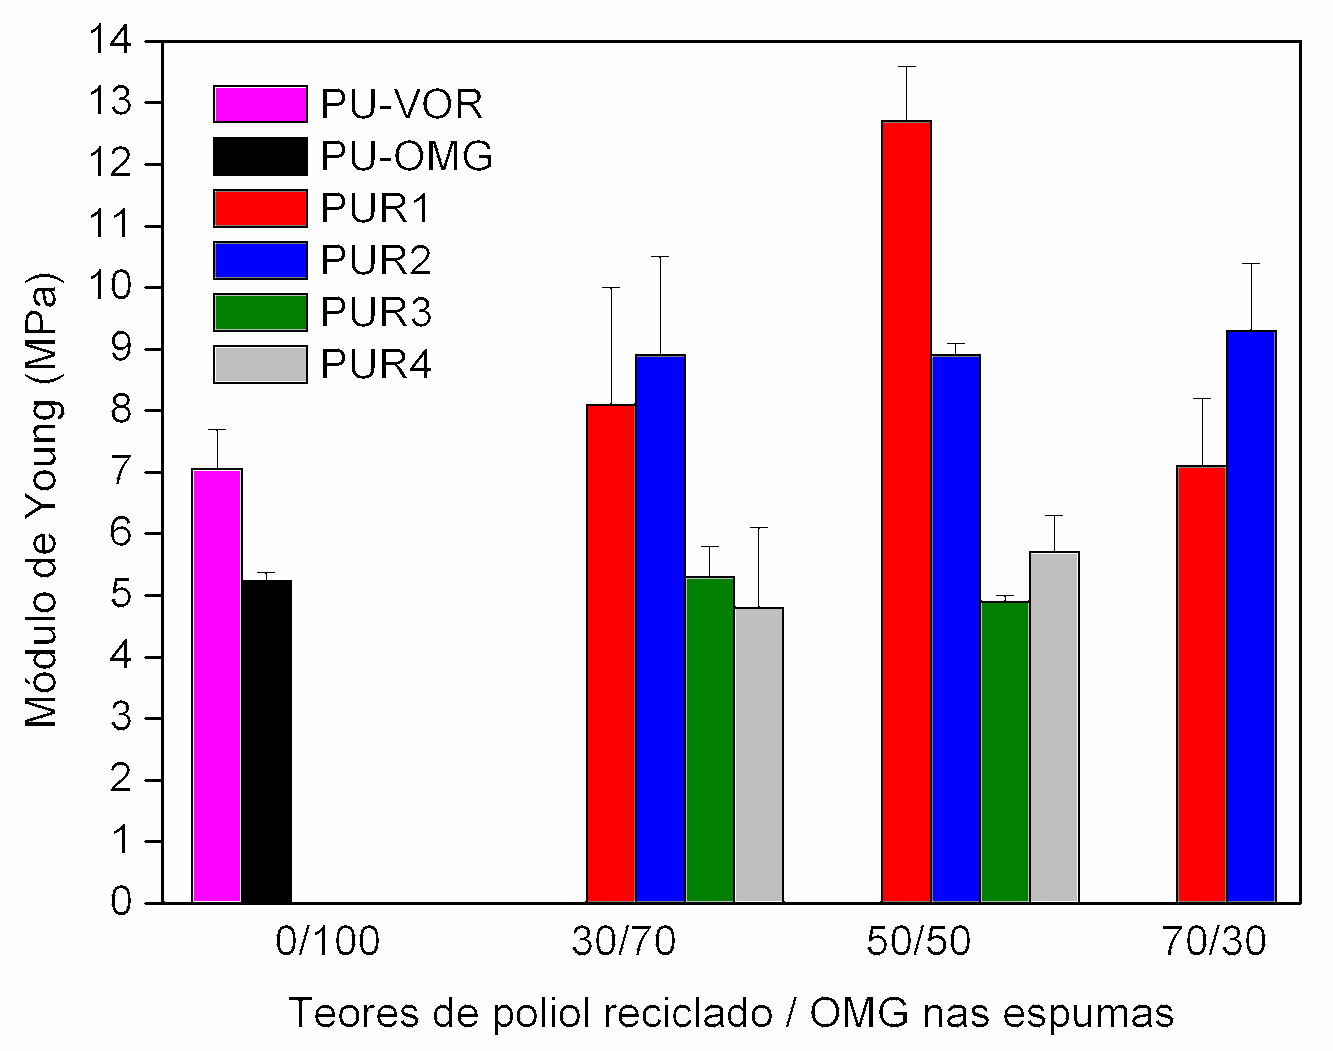 Novamente o alto índice de hidroxilas dos polióis reciclados R1 e R2 (718 e 710 mgkoh/g) são responsáveis por este resultado.